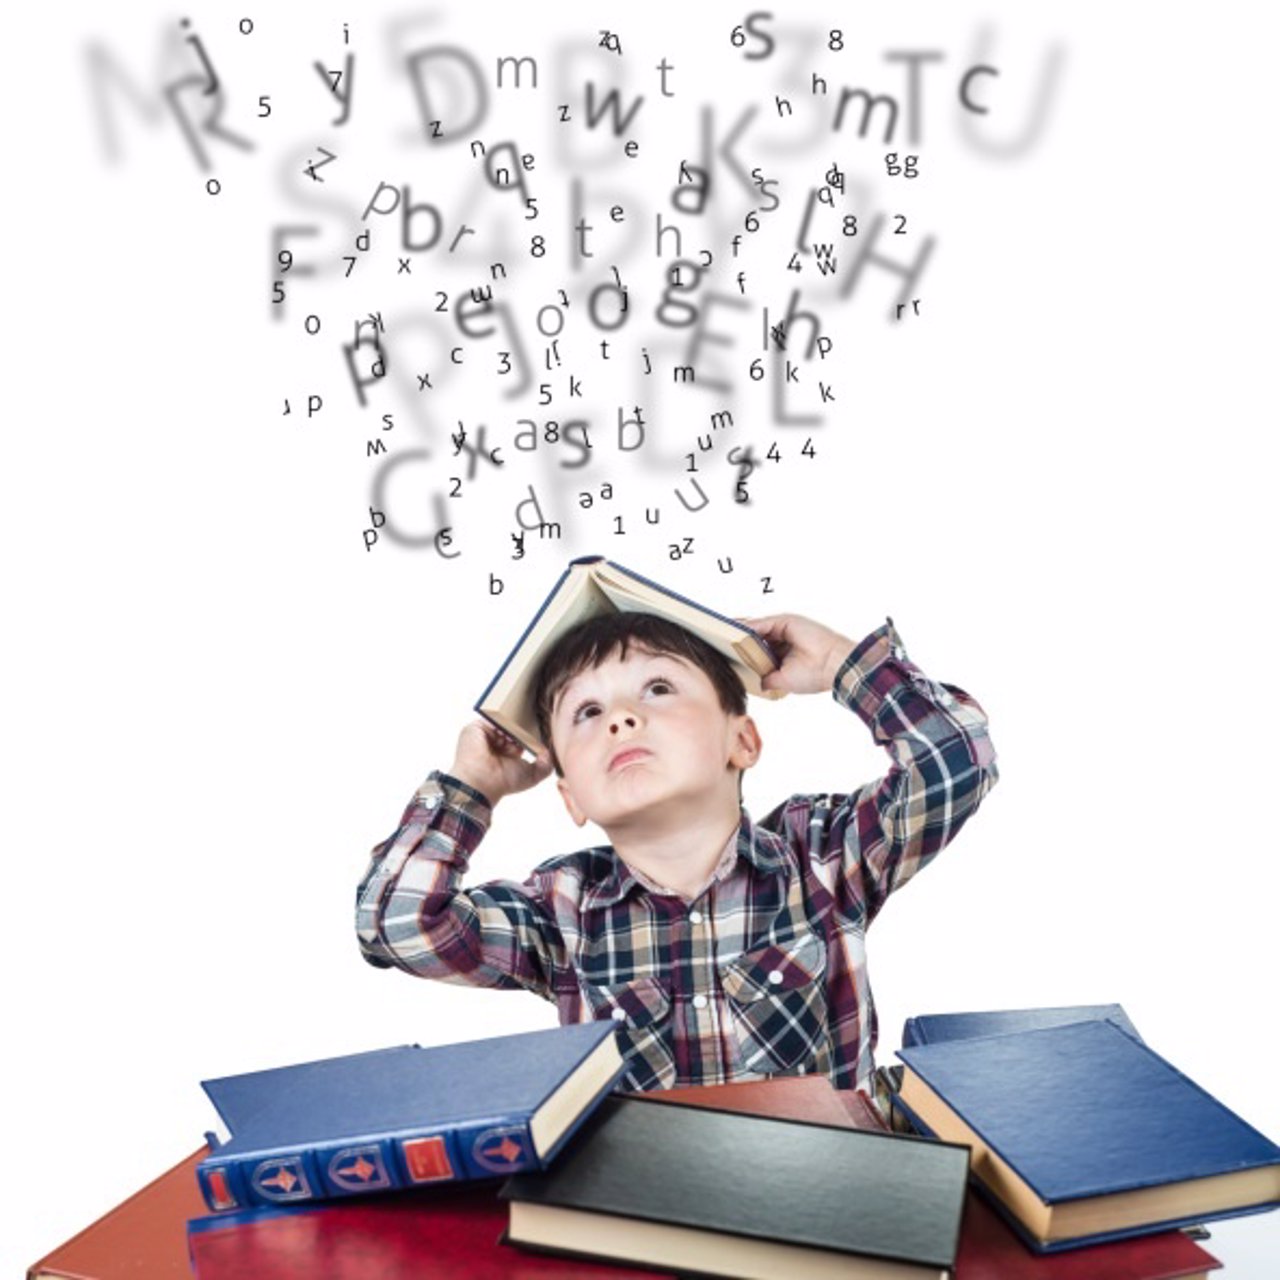 Dislexia, estudiando, letras, niño, libros